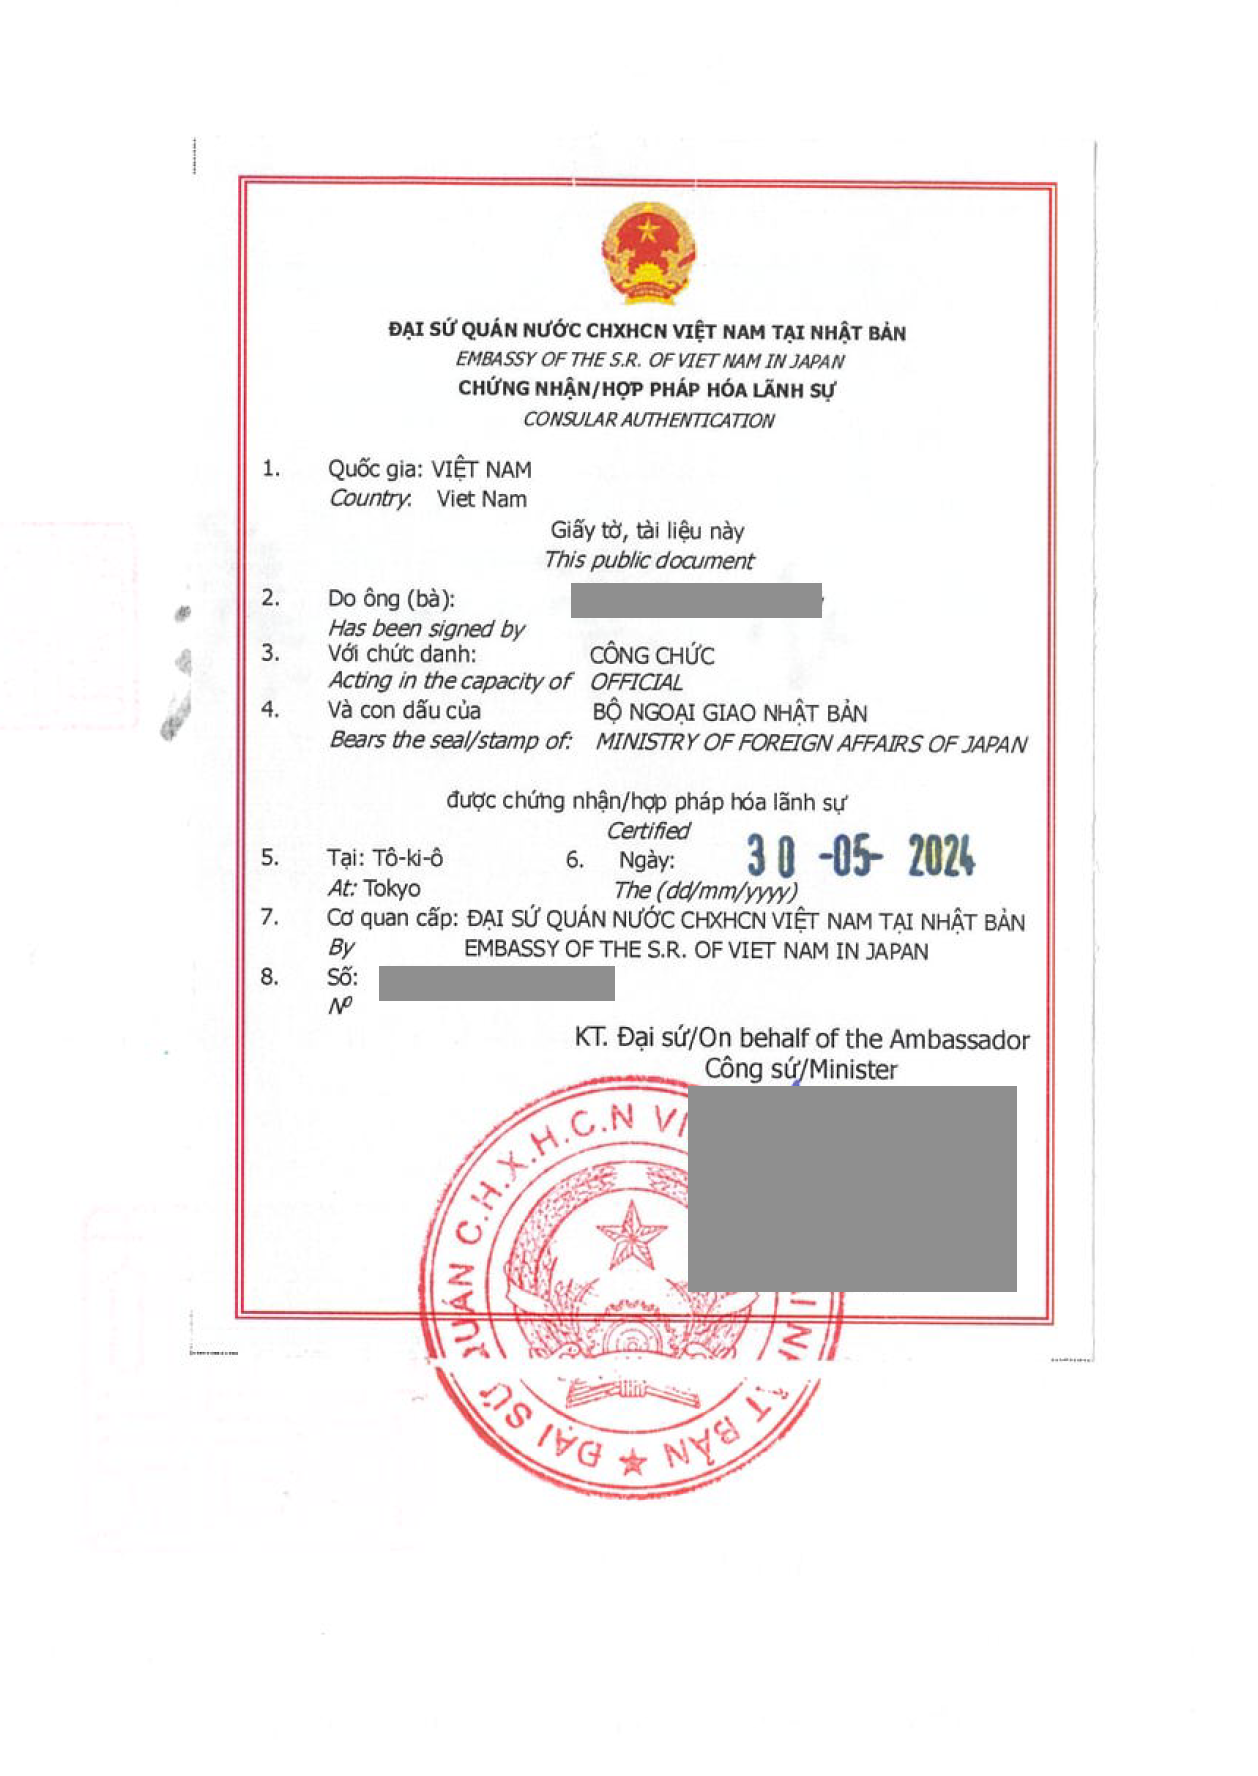 駐日ベトナム大使館の領事認証・翻訳公証の申請代行